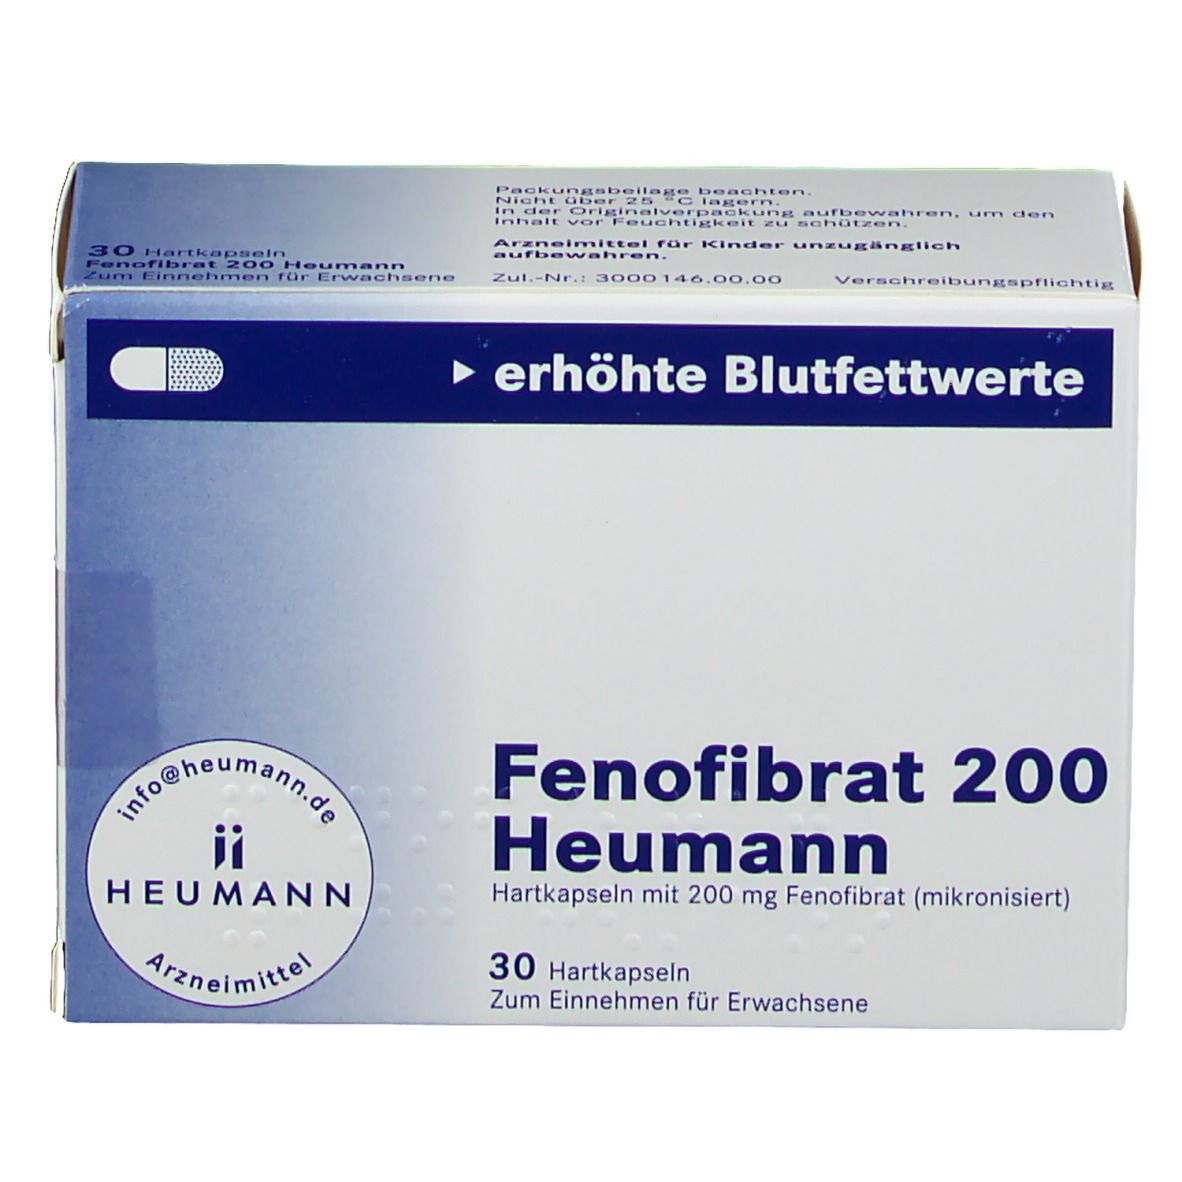 Fenofibrat 200 Heumann